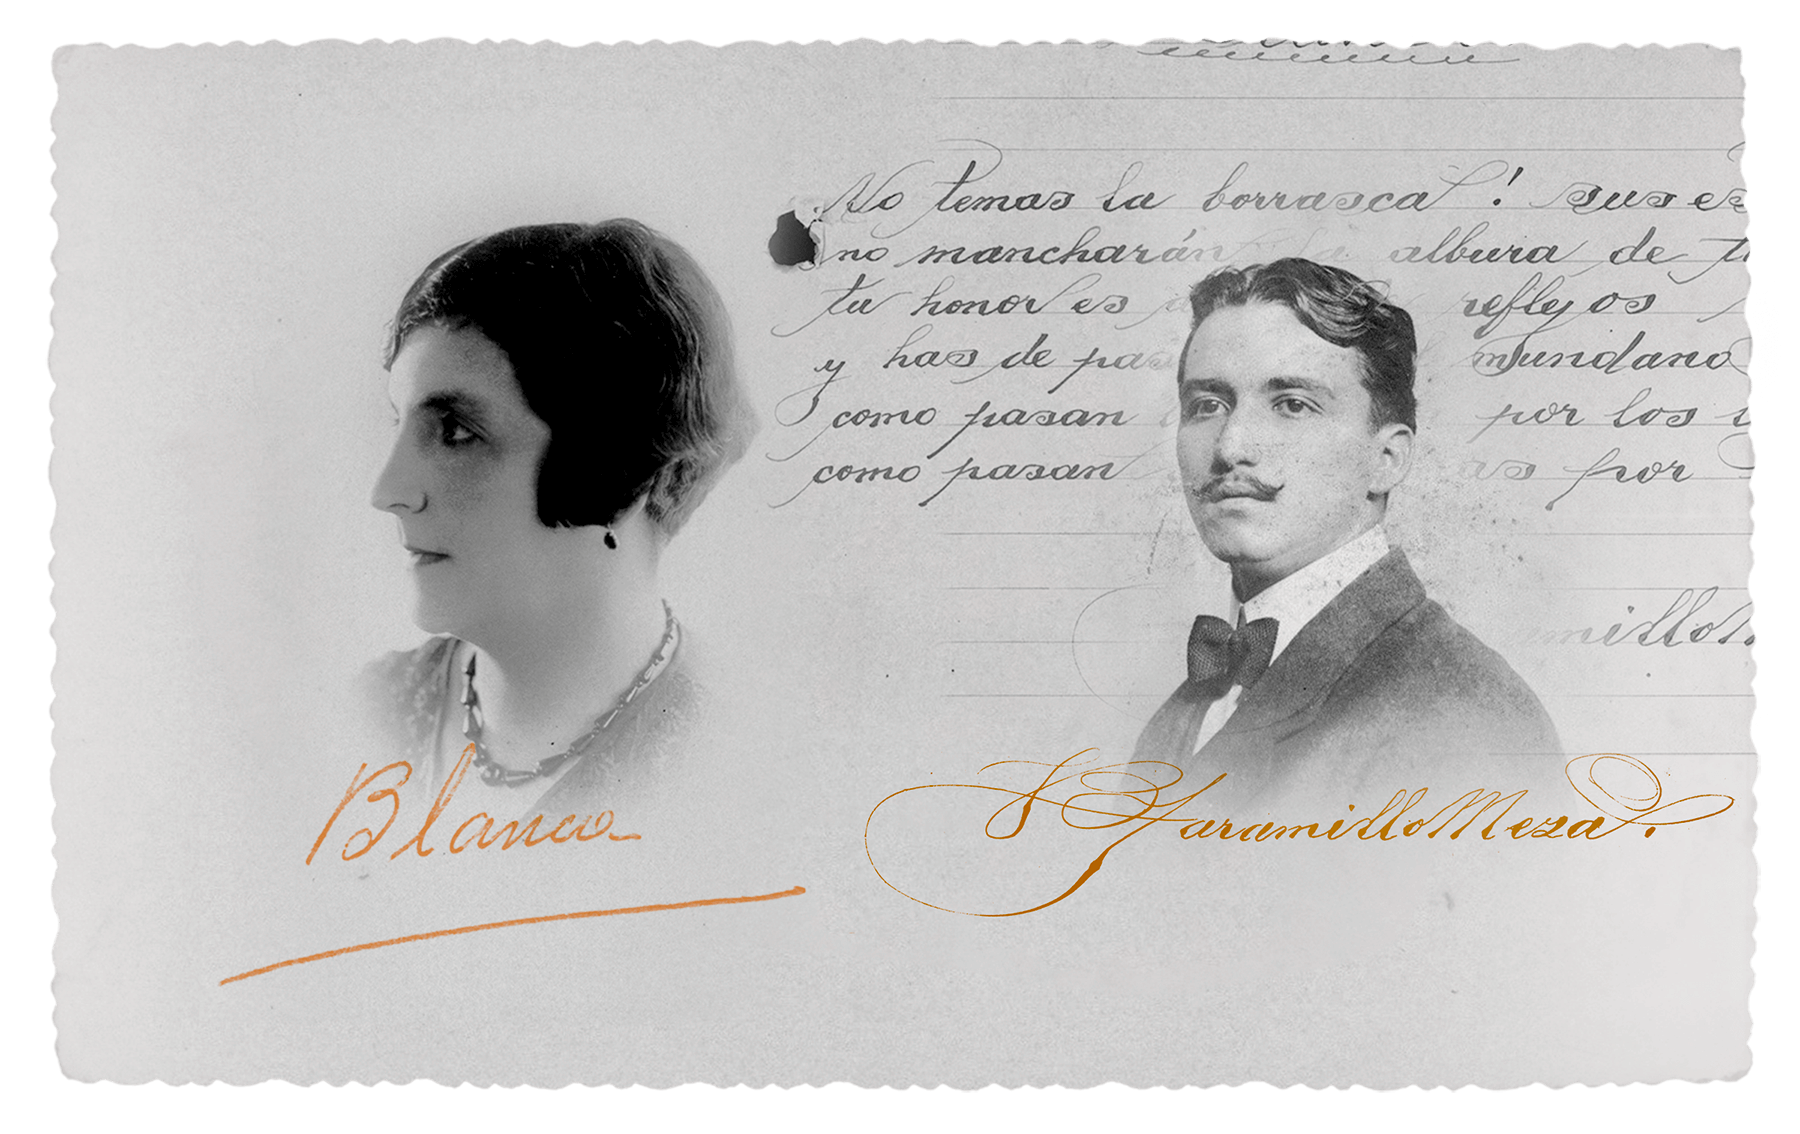 Fotografía en blanco y negro de de Blanza Izasa y Juan Bautista con fondo de una carta